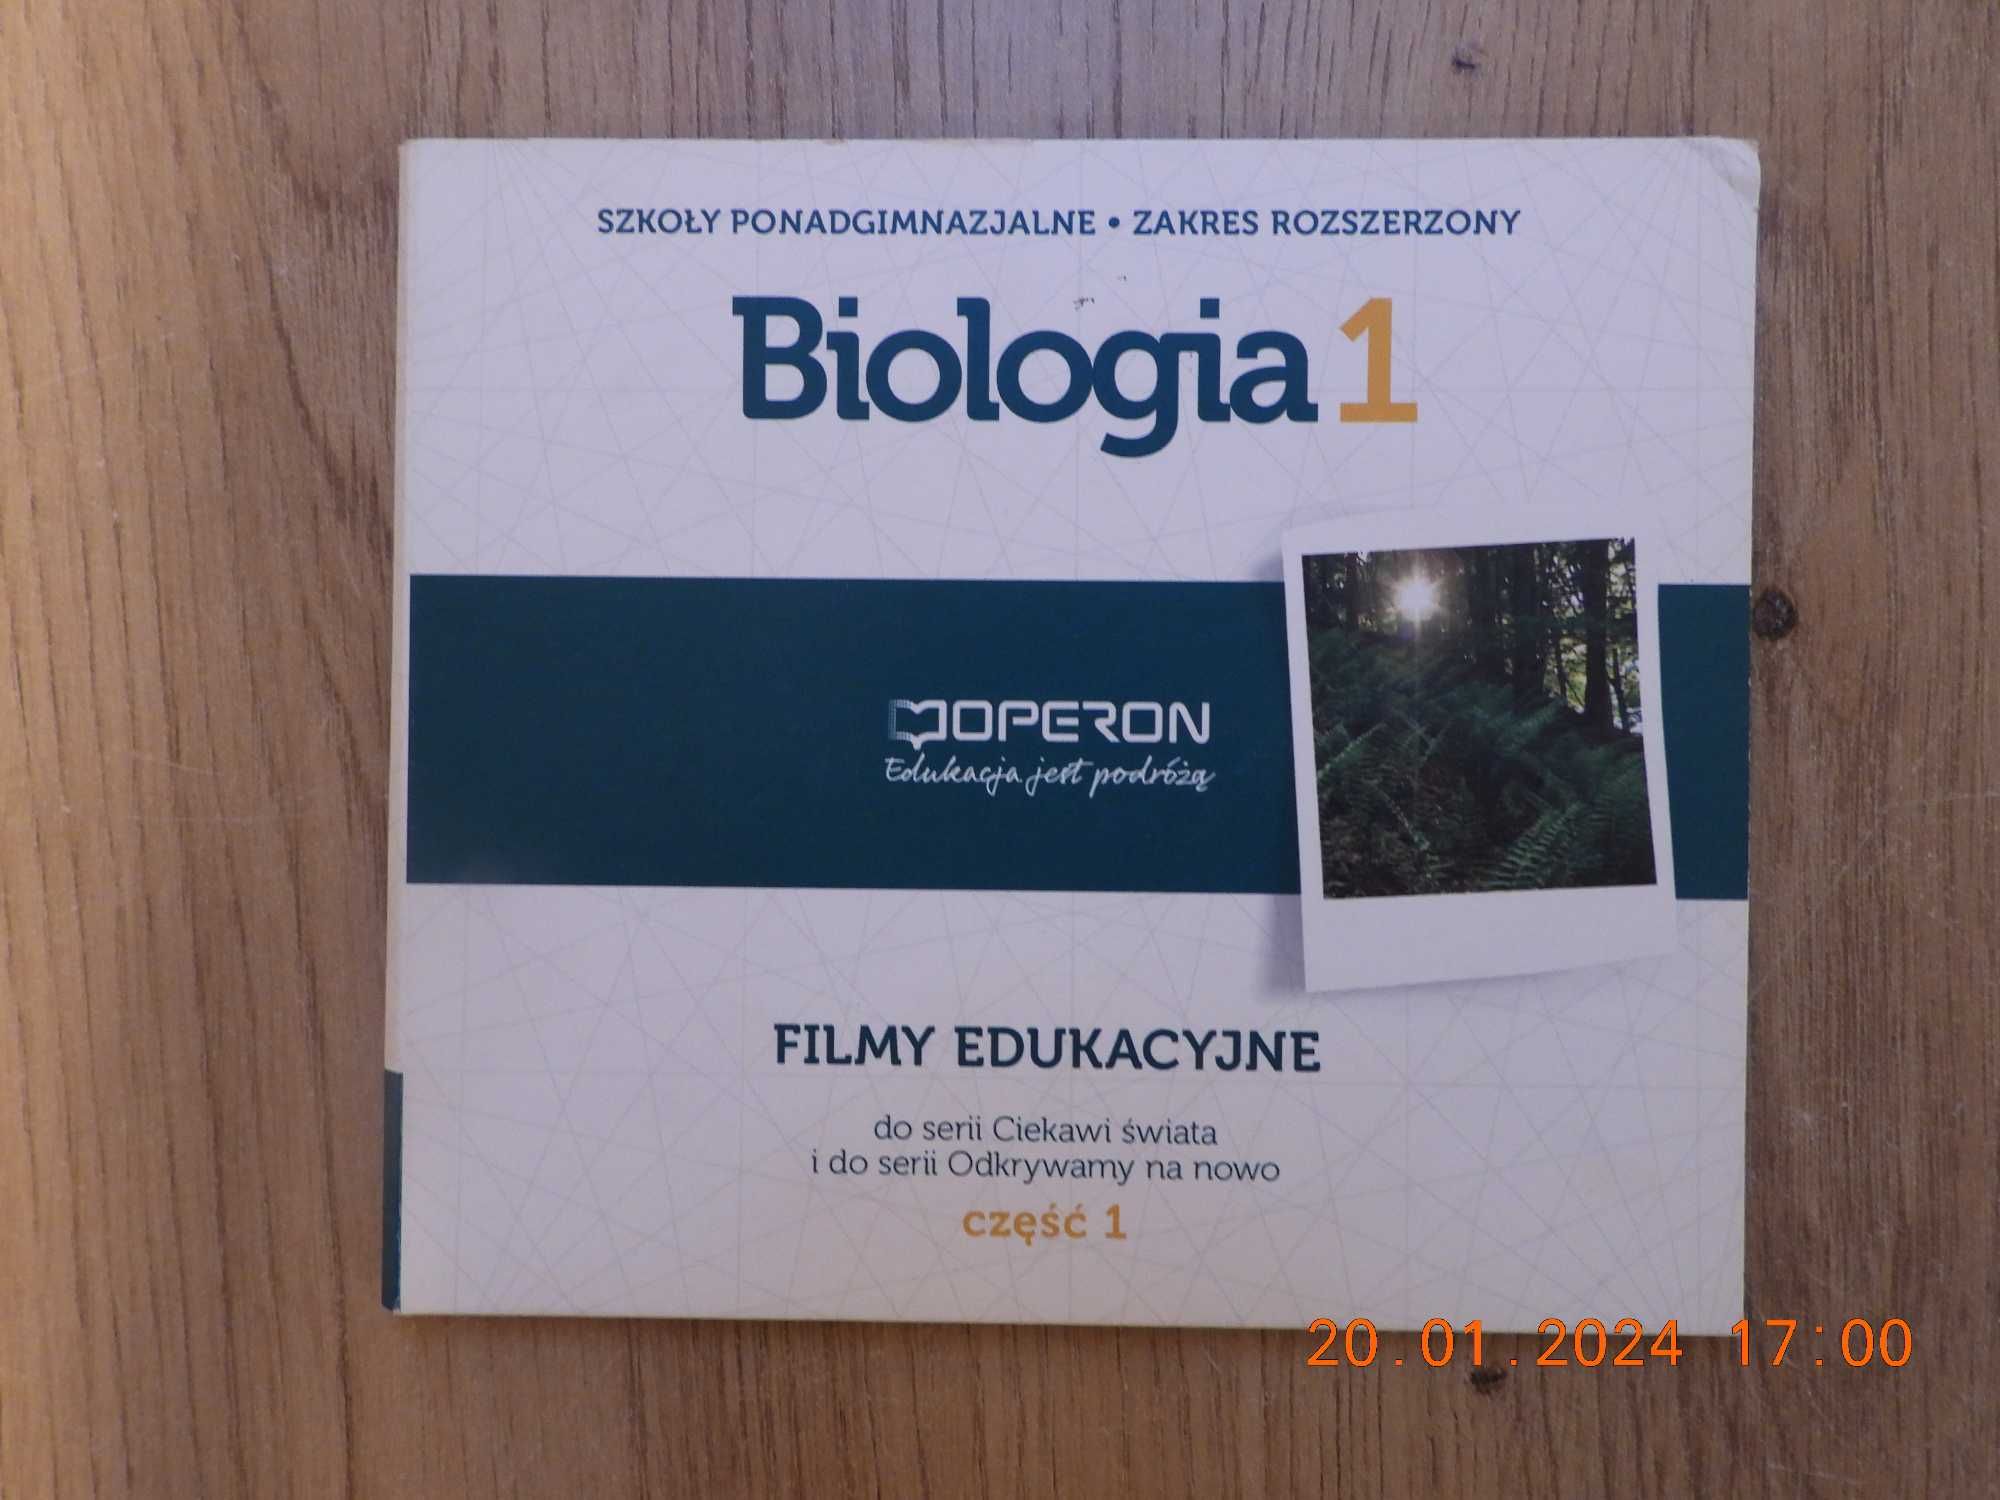 OPERON - Nauczyciel: Biologia - zakres rozszerzony - filmy edukacyjne!